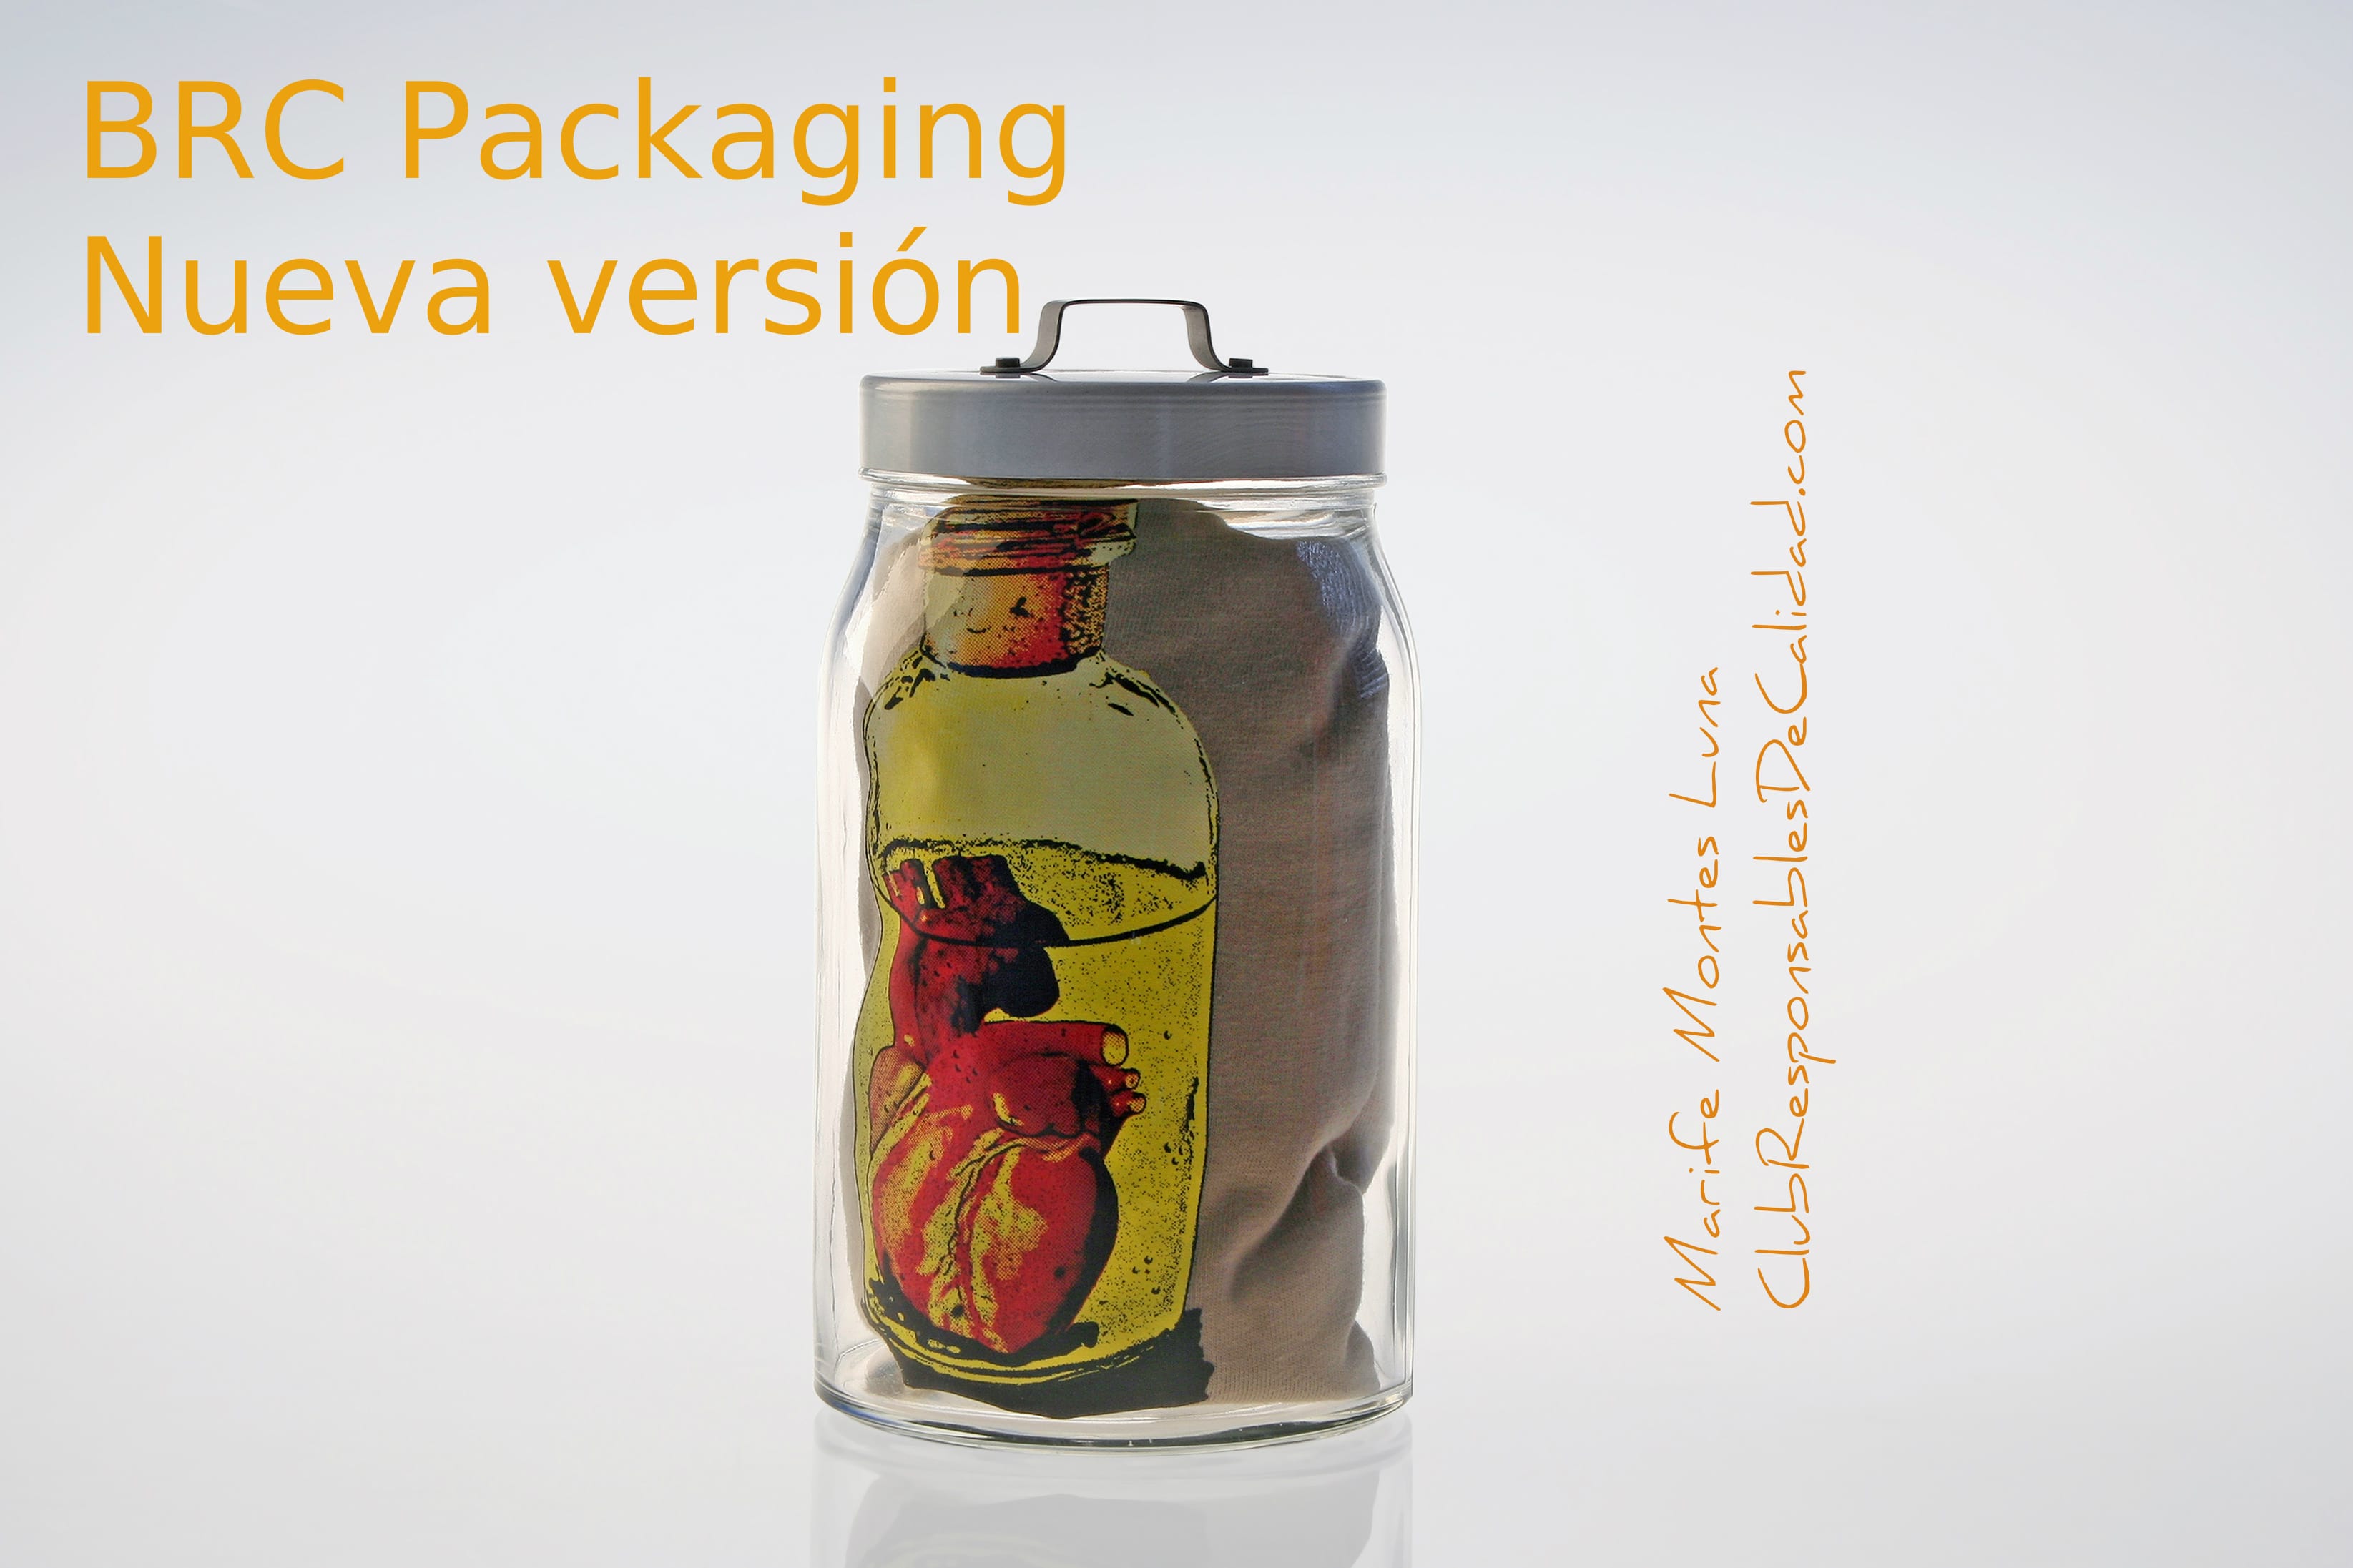 brc packaging